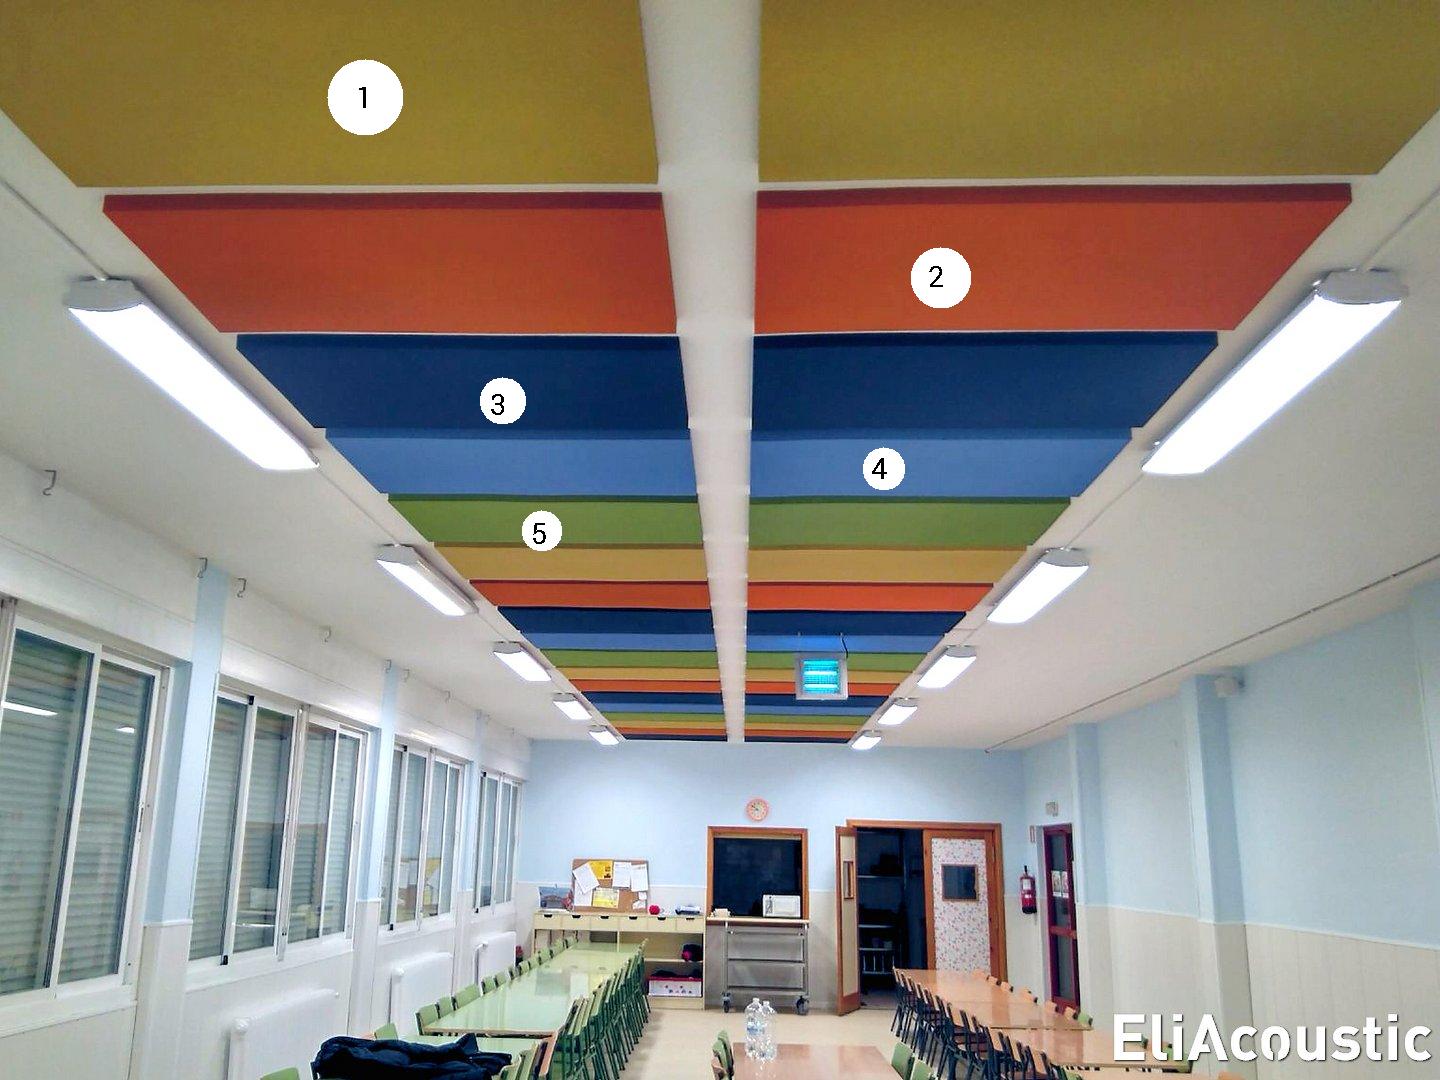 Panel acústico absorbente de ruido decorativo coloreado en comedor escolar